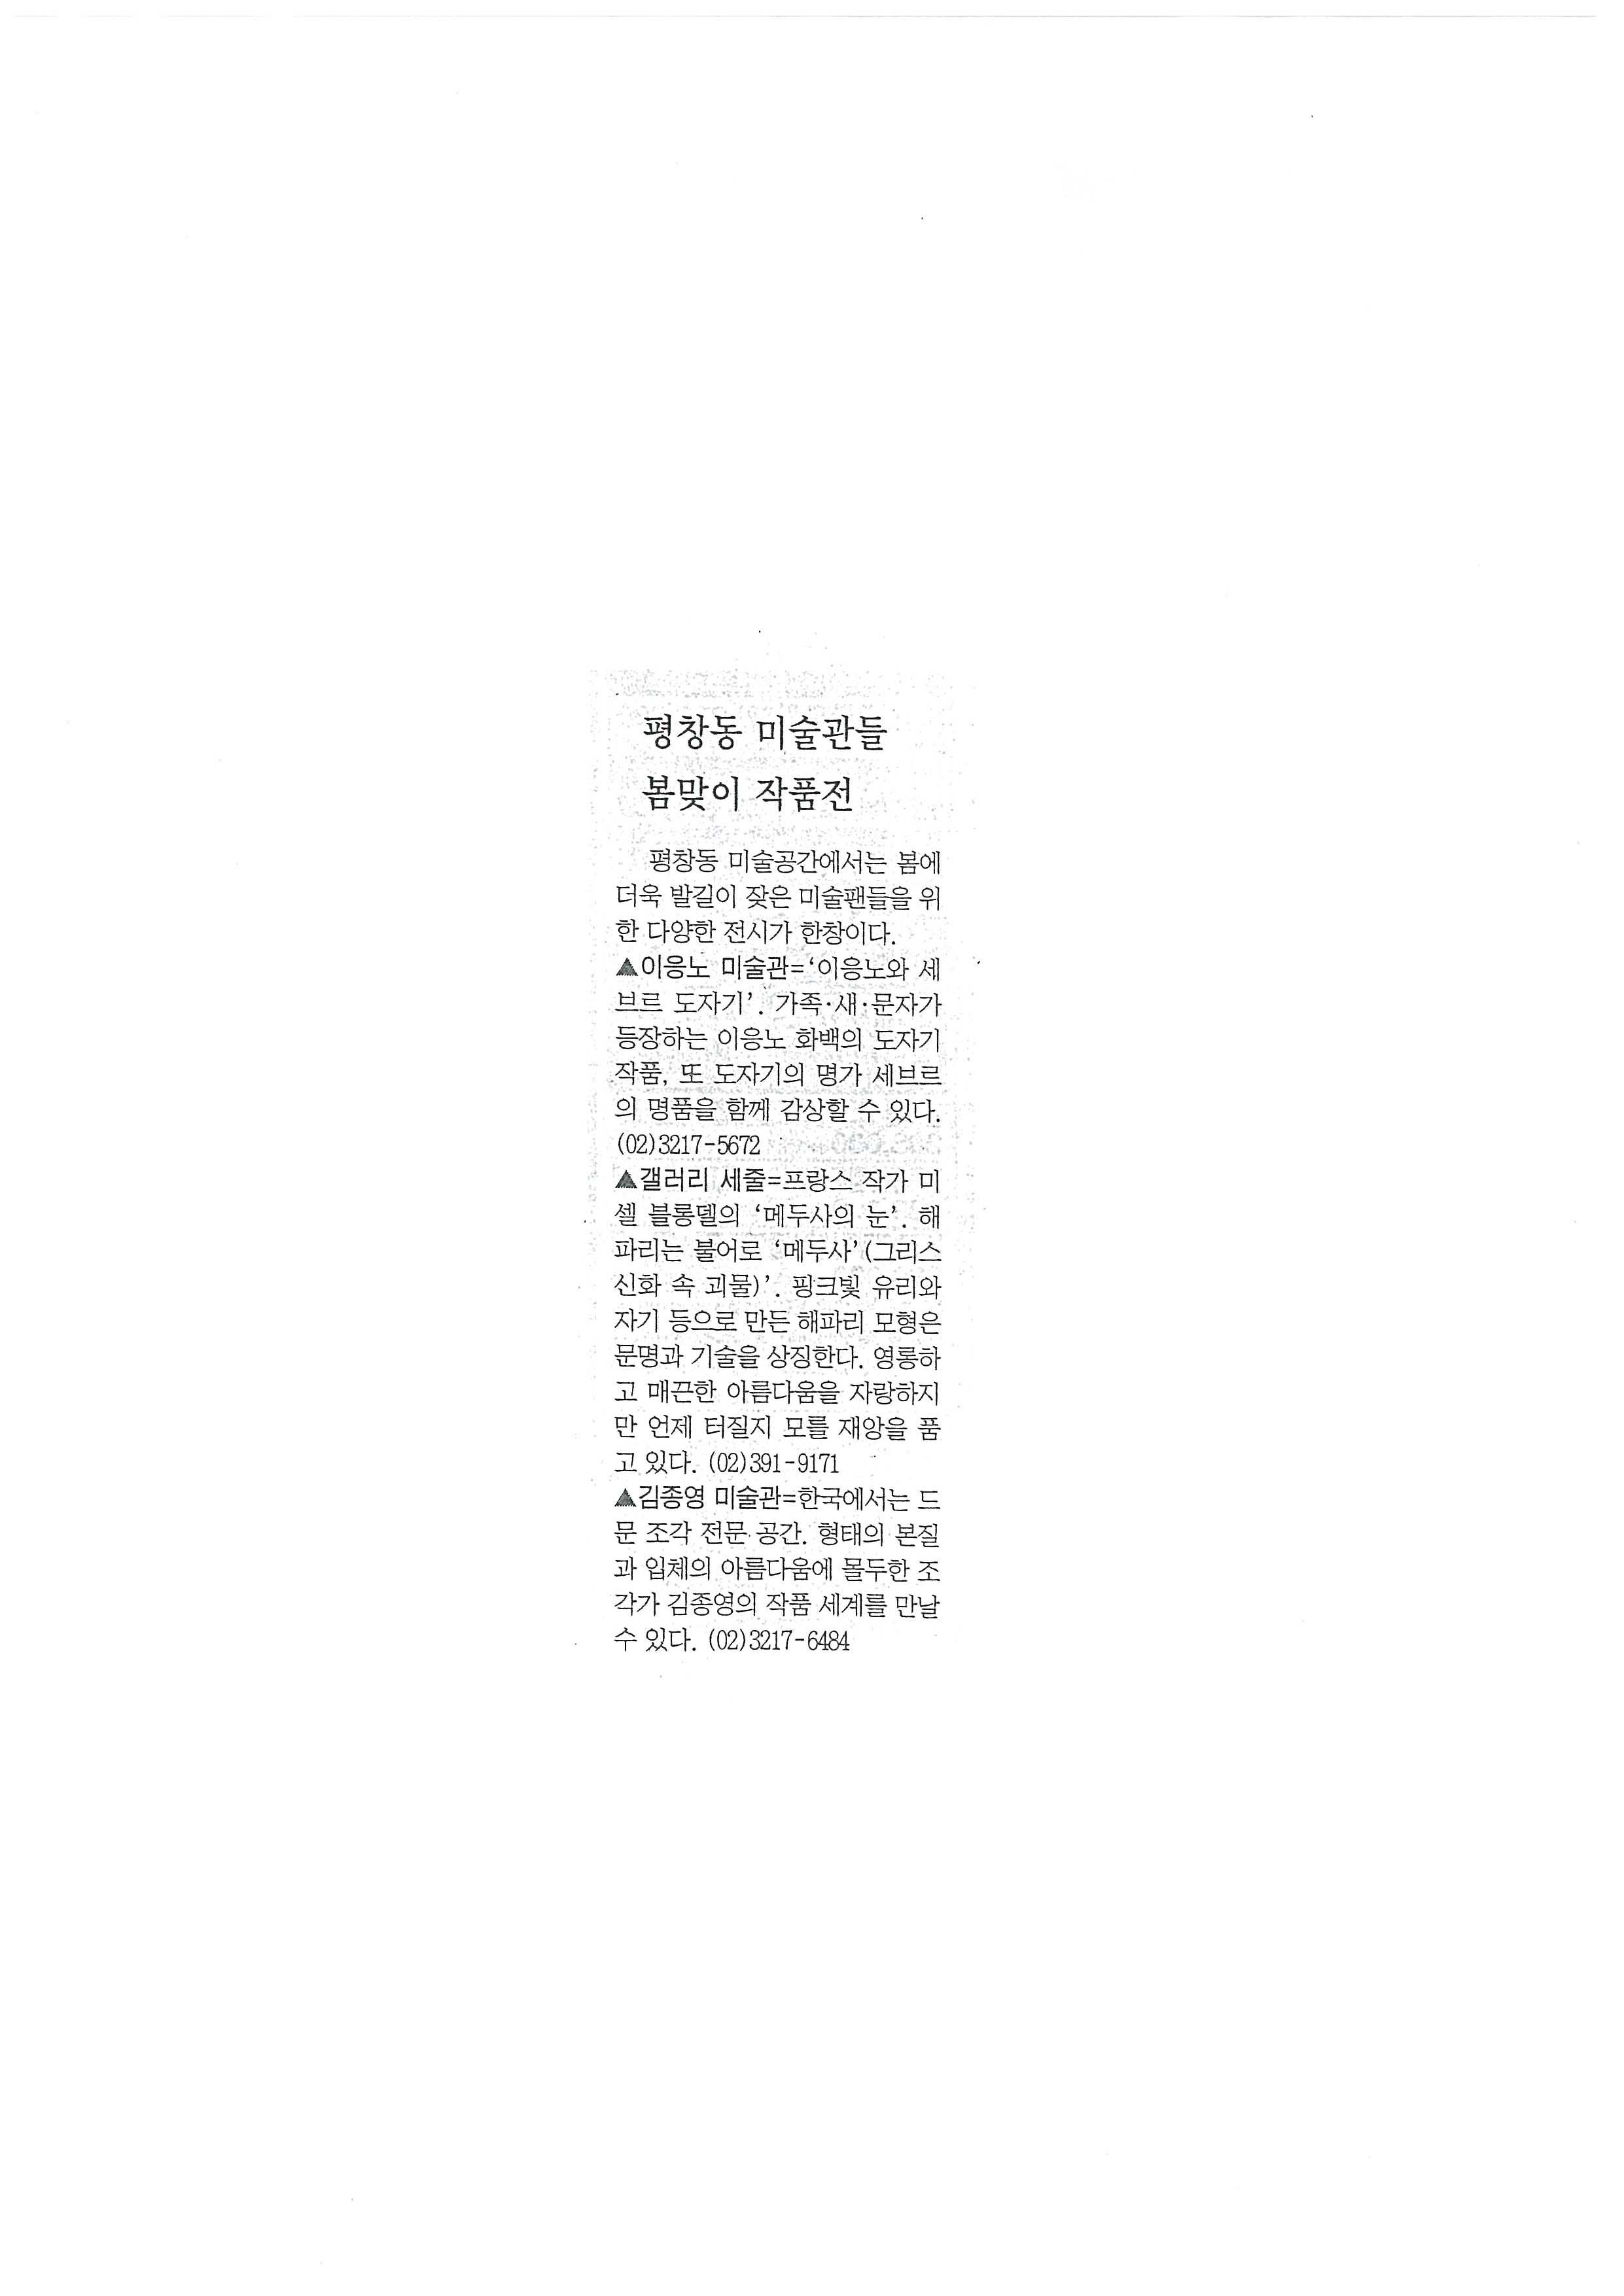 「평창동 미술관들 봄맞이 작품전」, 『조선일보』